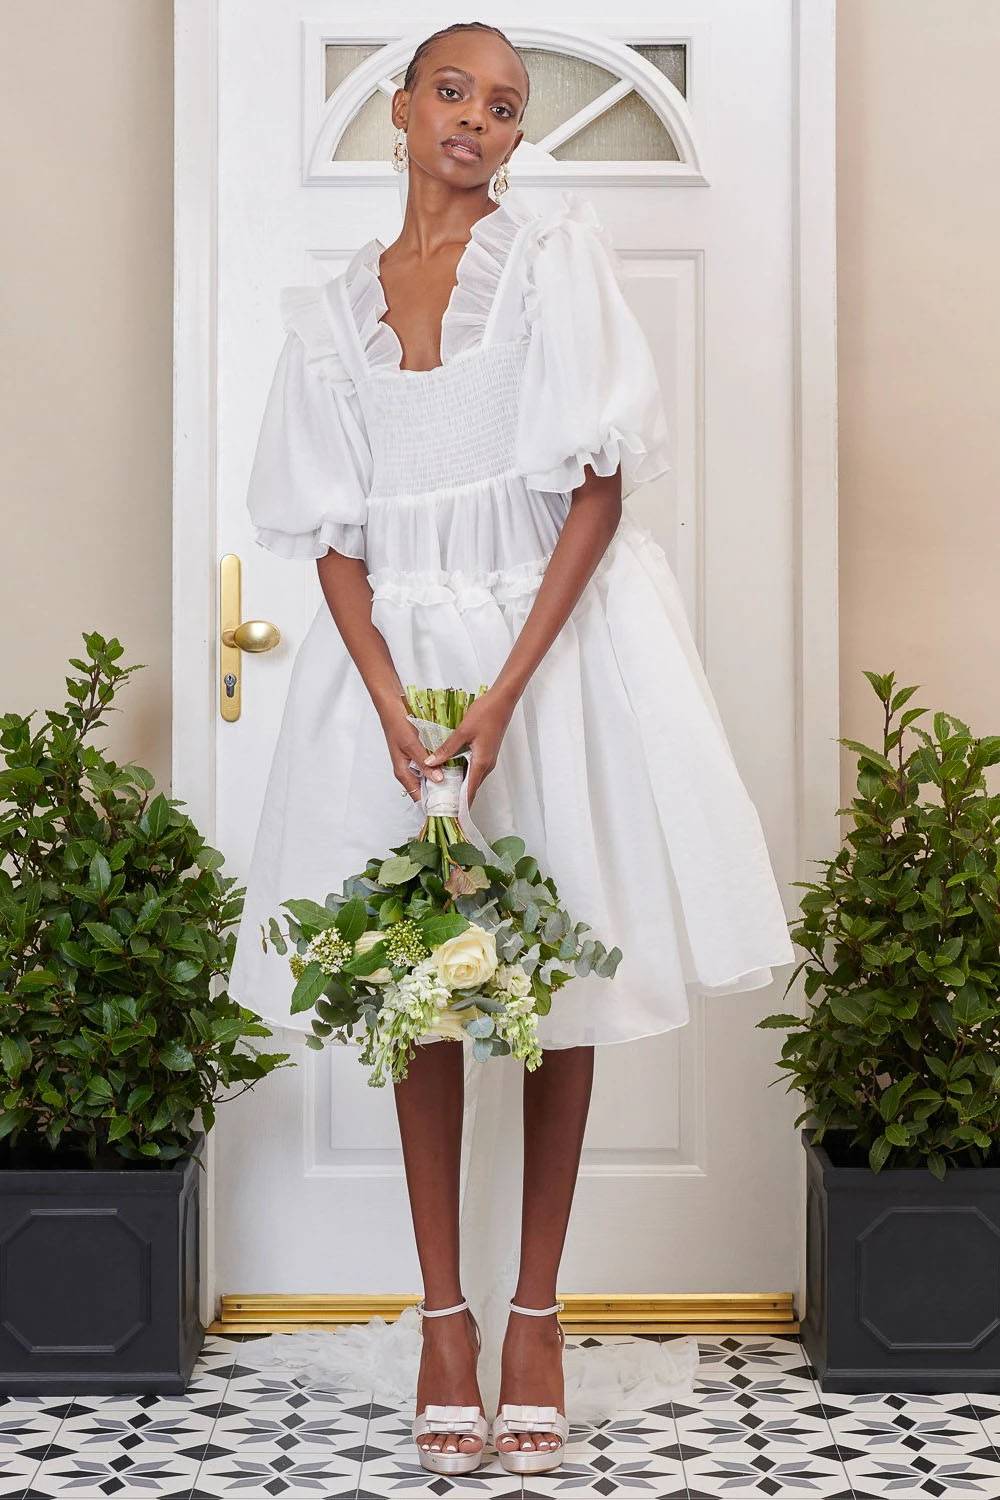 Rotaro mietet luxuriöses Hochzeitskleid